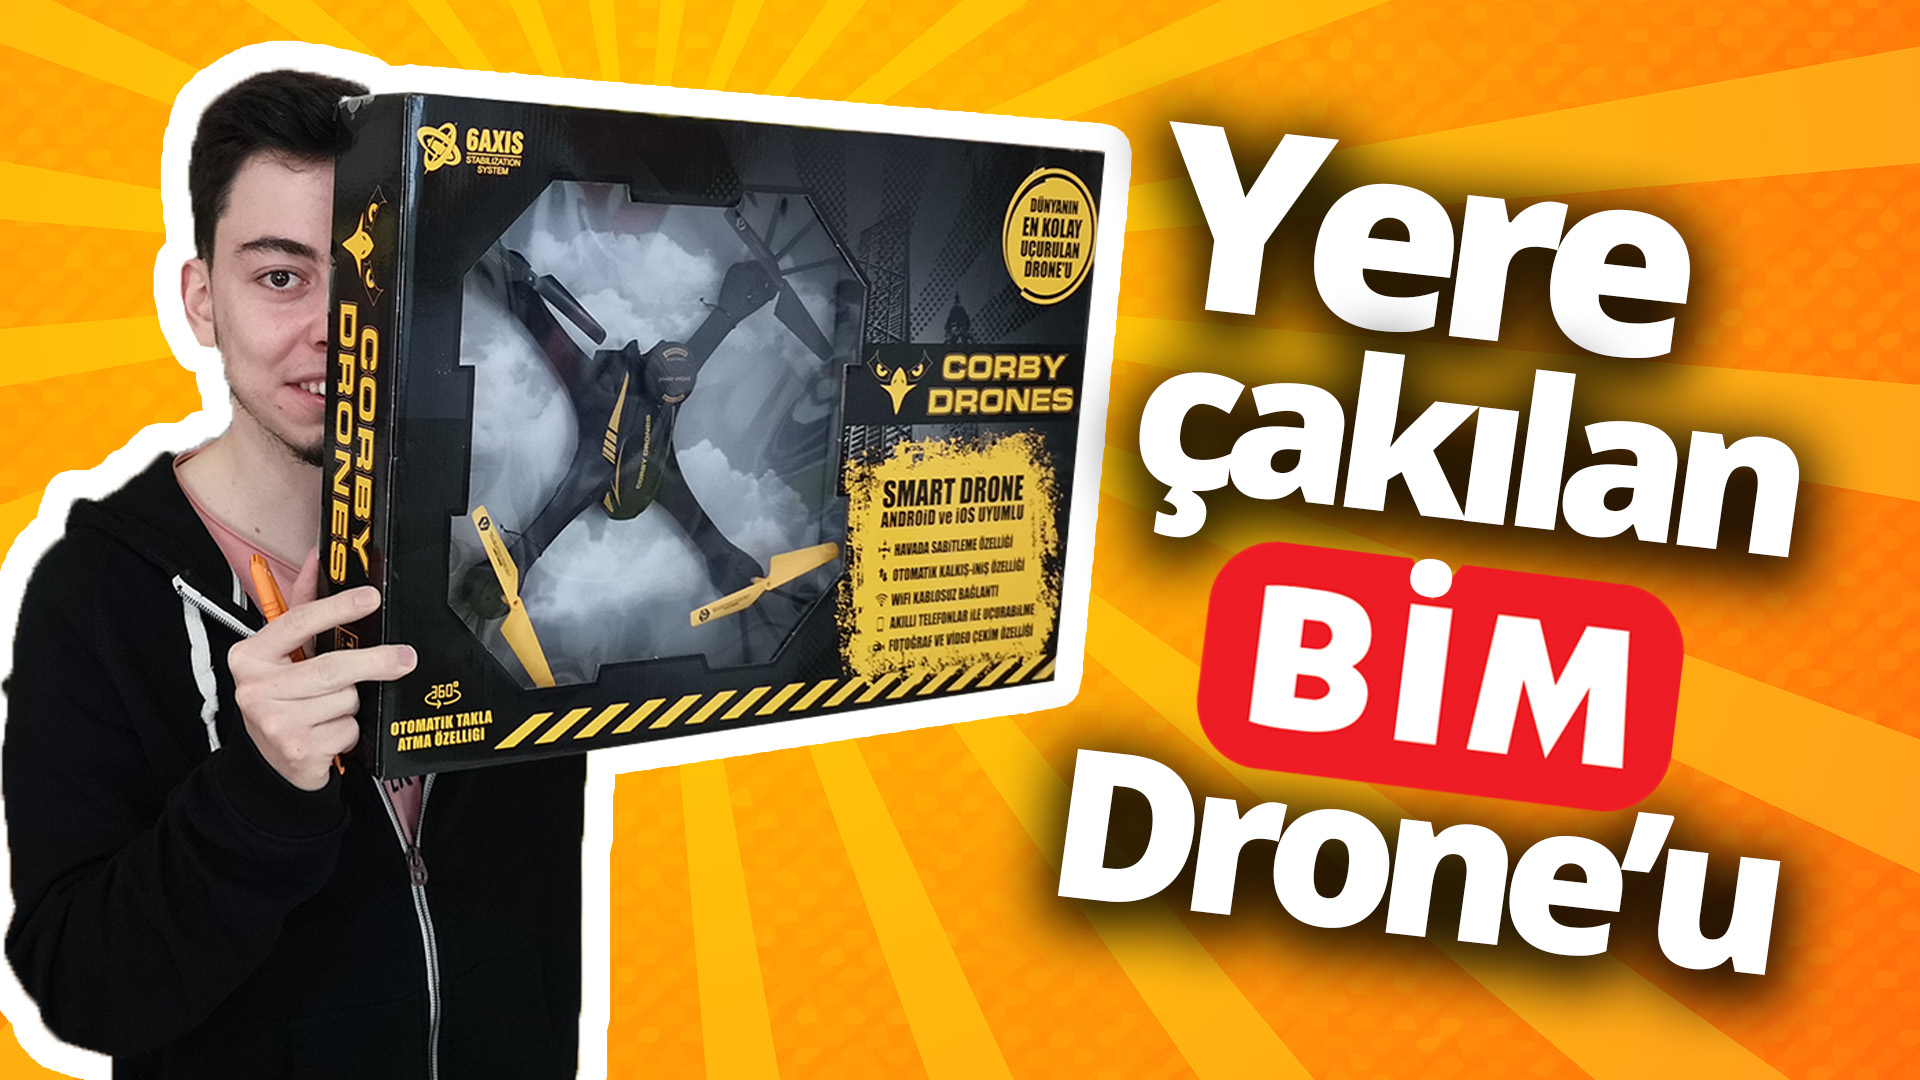 250 liraya drone alırsanız ne olur? (Video)